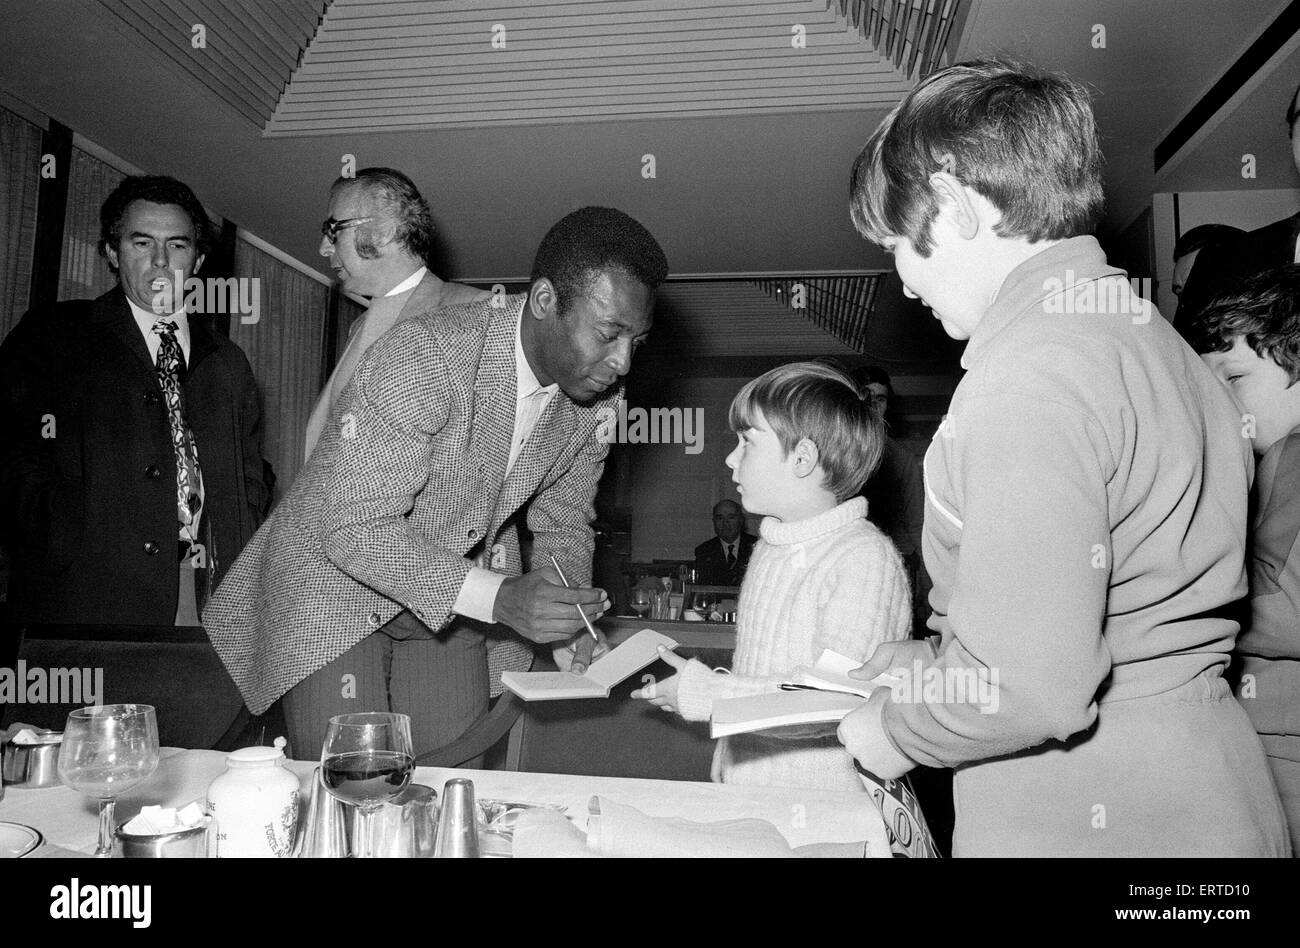 Calciatore brasiliano Edson Arantes do Nascimento, più famoso sa come Pele, raffigurato firma autografi durante la sua visita a Birmingham. Febbraio 1972 Foto Stock